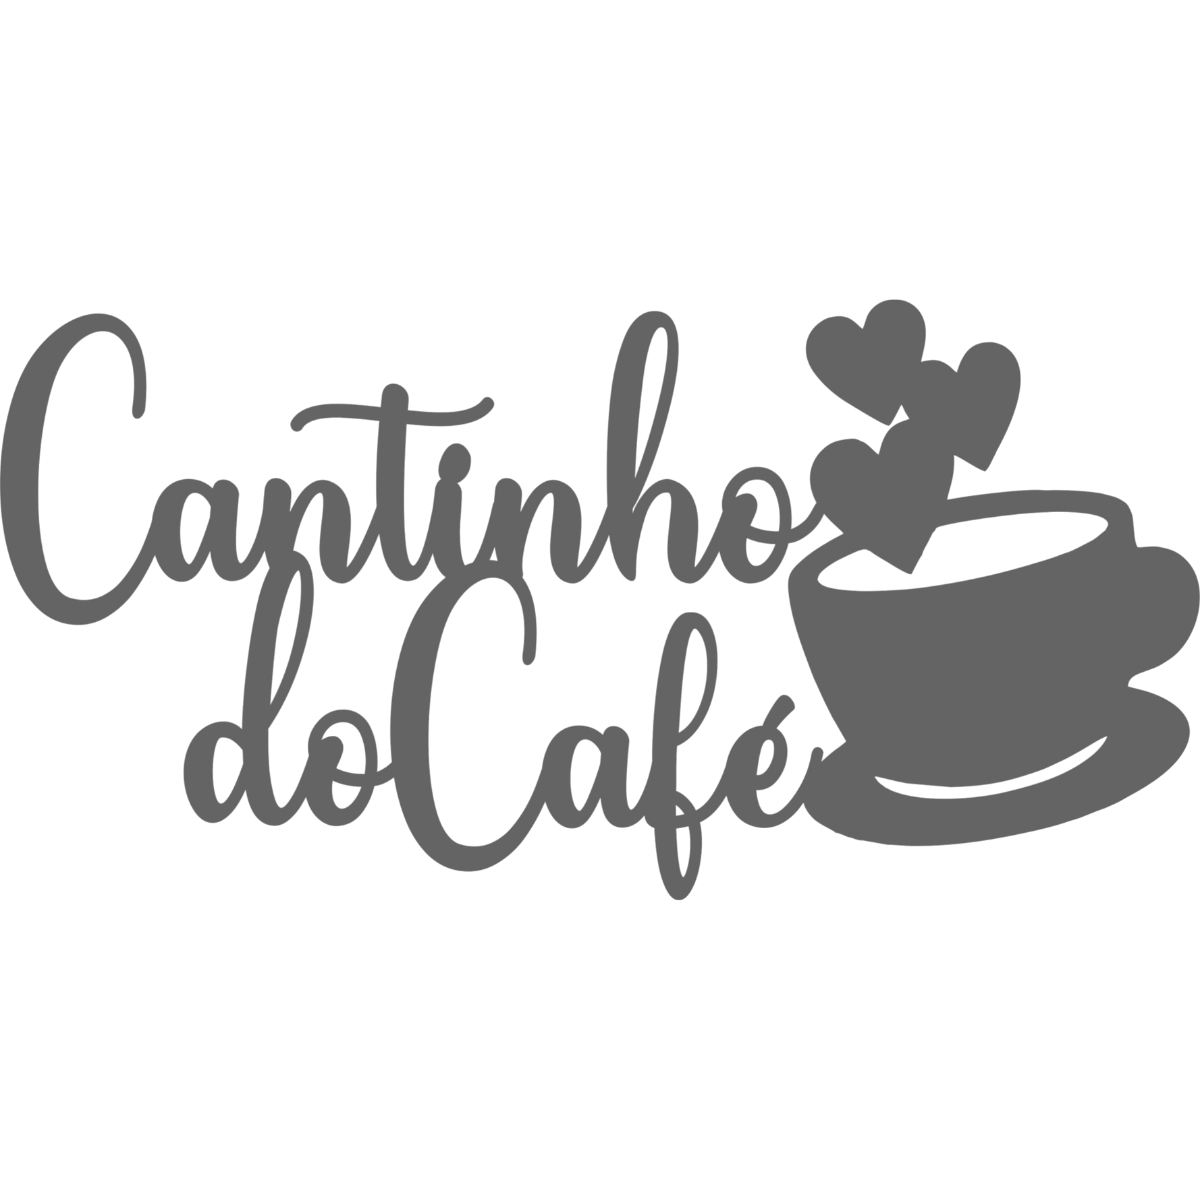 Cantinho do Cafe - Xícara - Decorativo - MDF - Preto - Plaquinha Buffet cozinha - 15x30cm - 1